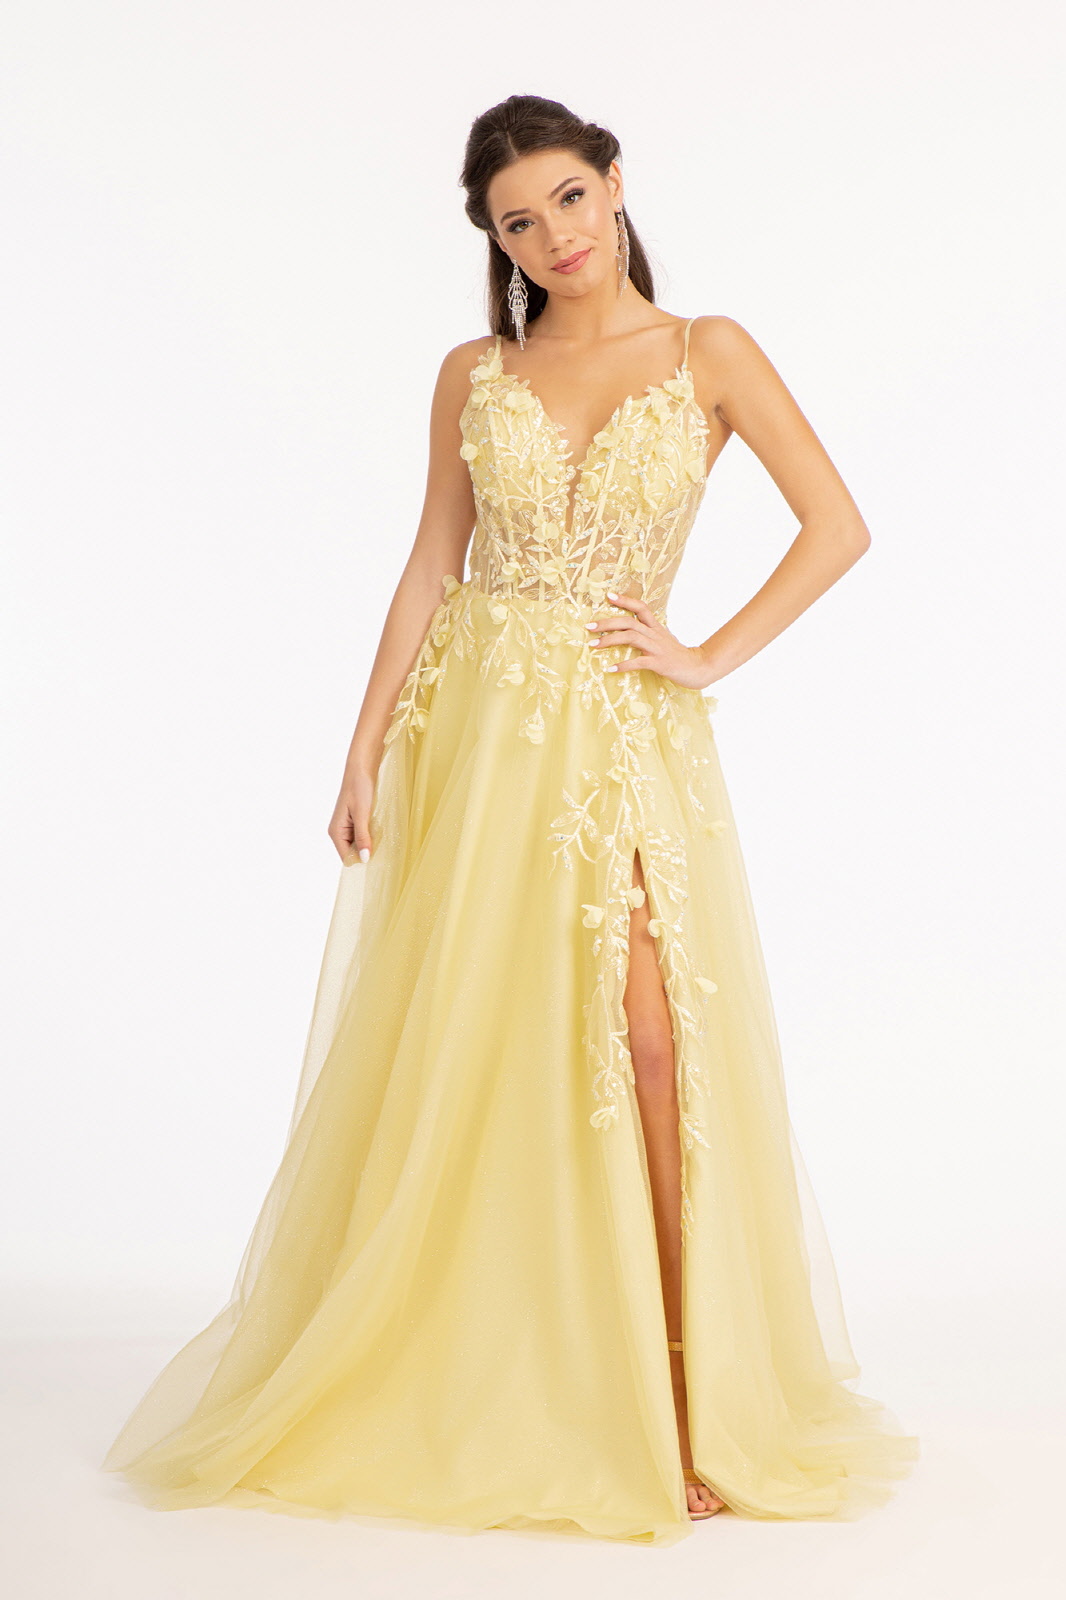 3D Floral Applique Glitter Mesh A-line Dress